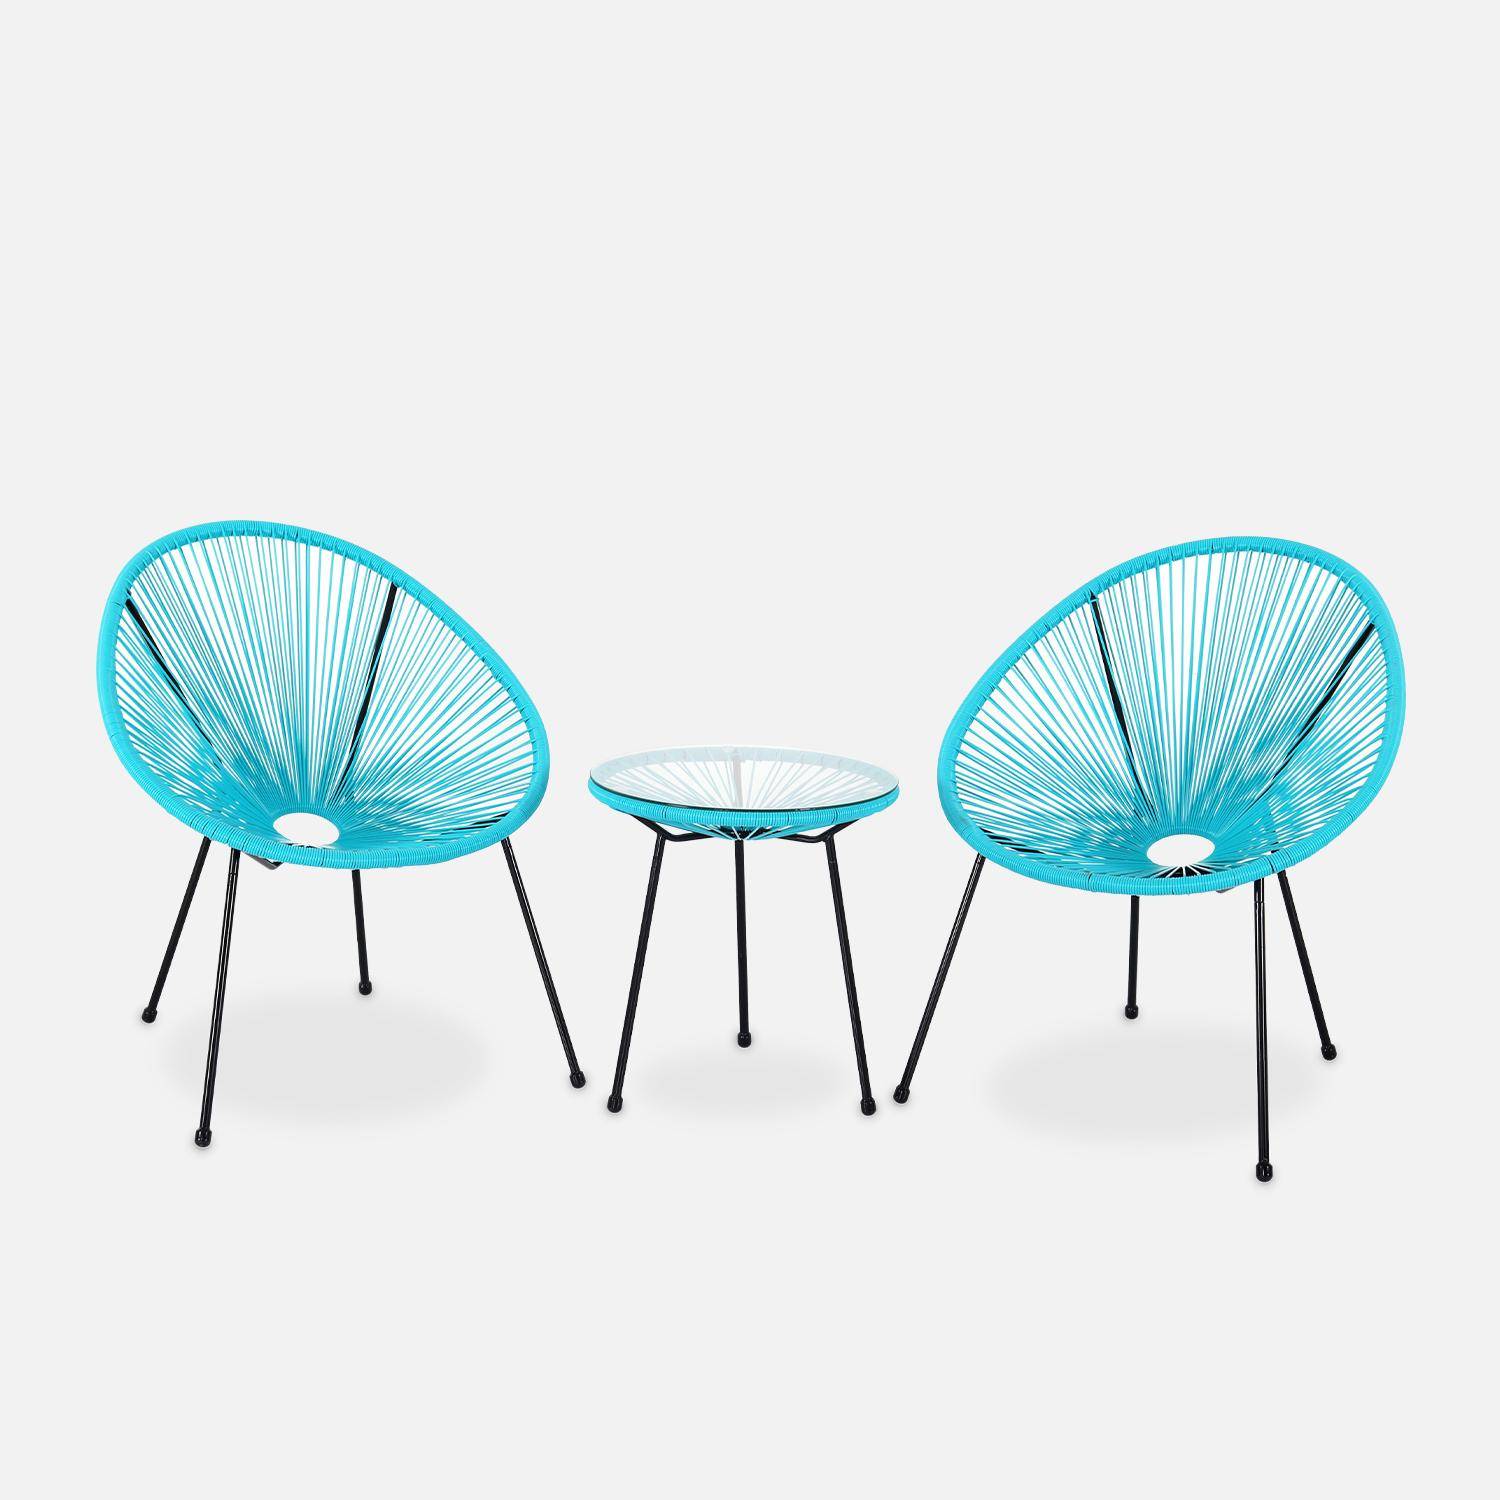 Lot de 2 fauteuils design Oeuf - Acapulco Turquoise- Fauteuils 4 pieds design rétro, cordage plastique, intérieur / extérieur Photo2